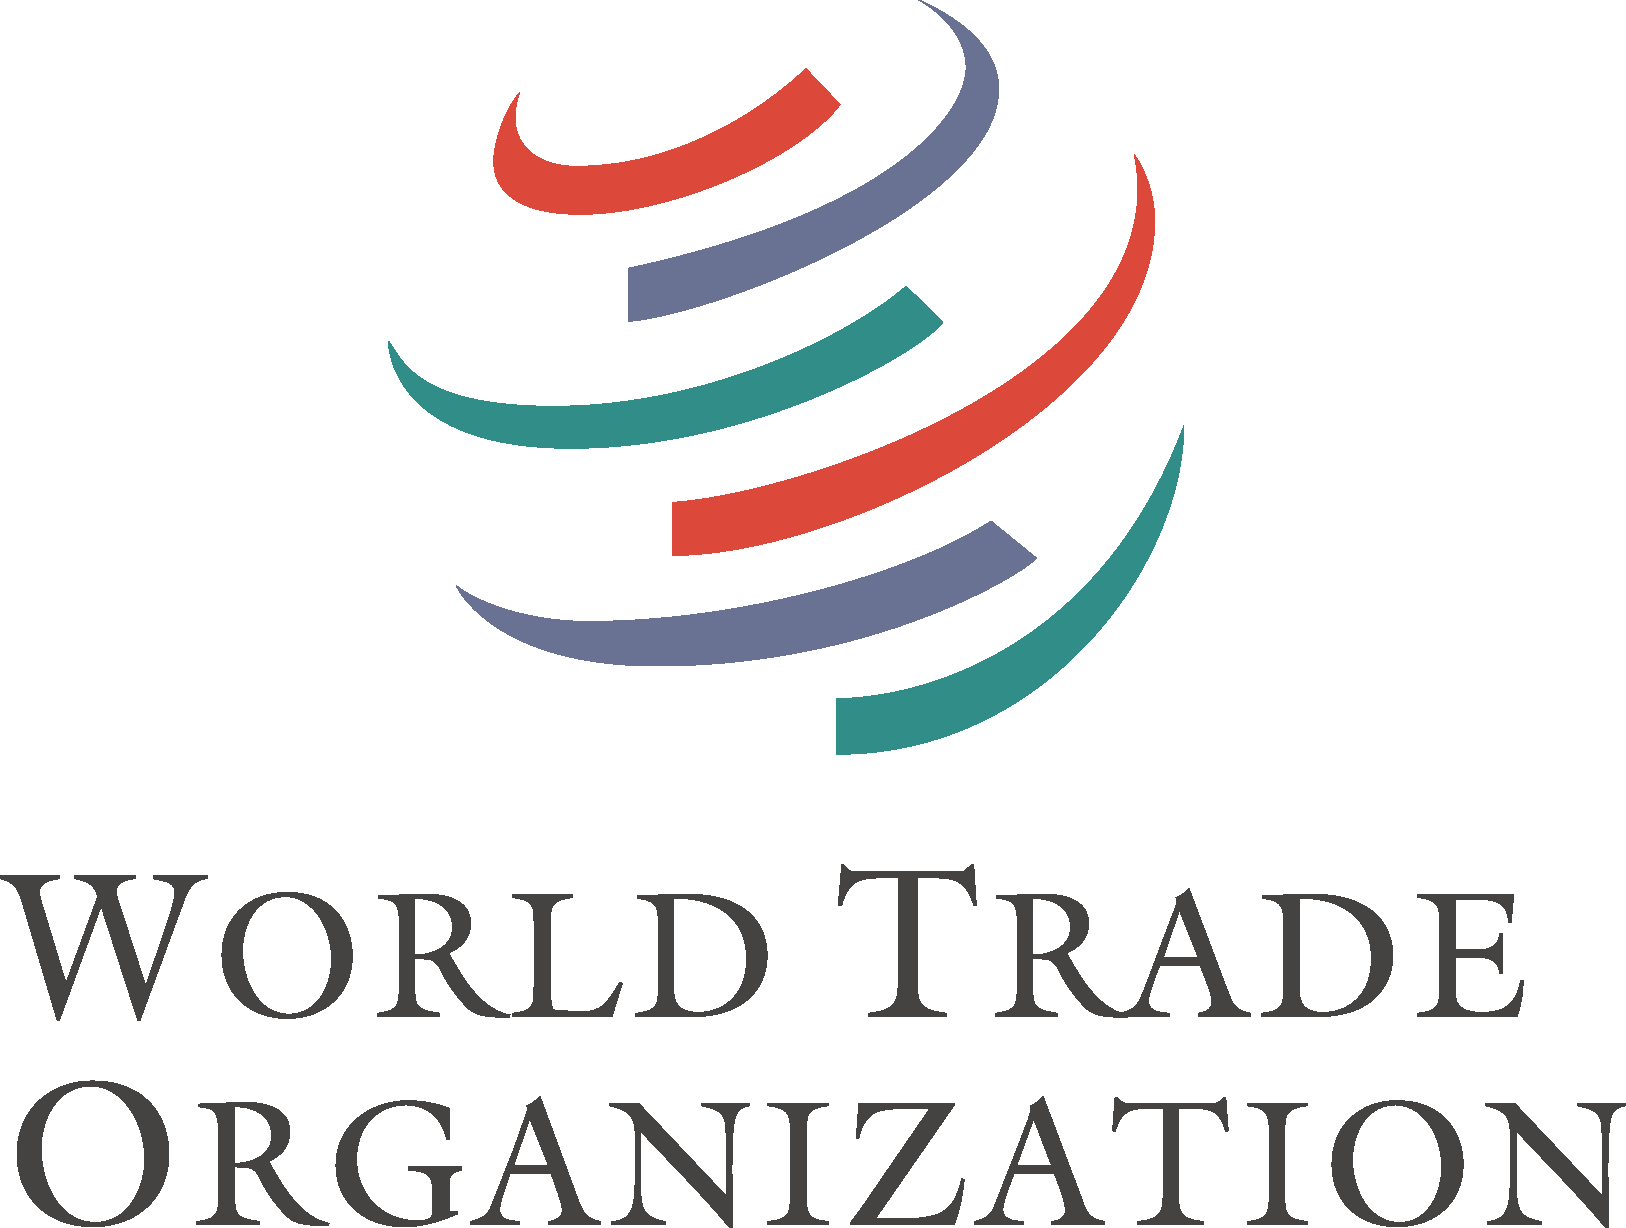 Всемирная торговая организация эмблема. Всемирная торговая организация (ВТО). ВТО логотип. Всемирная Торгова яорганизацйия. Мировая организация торговли